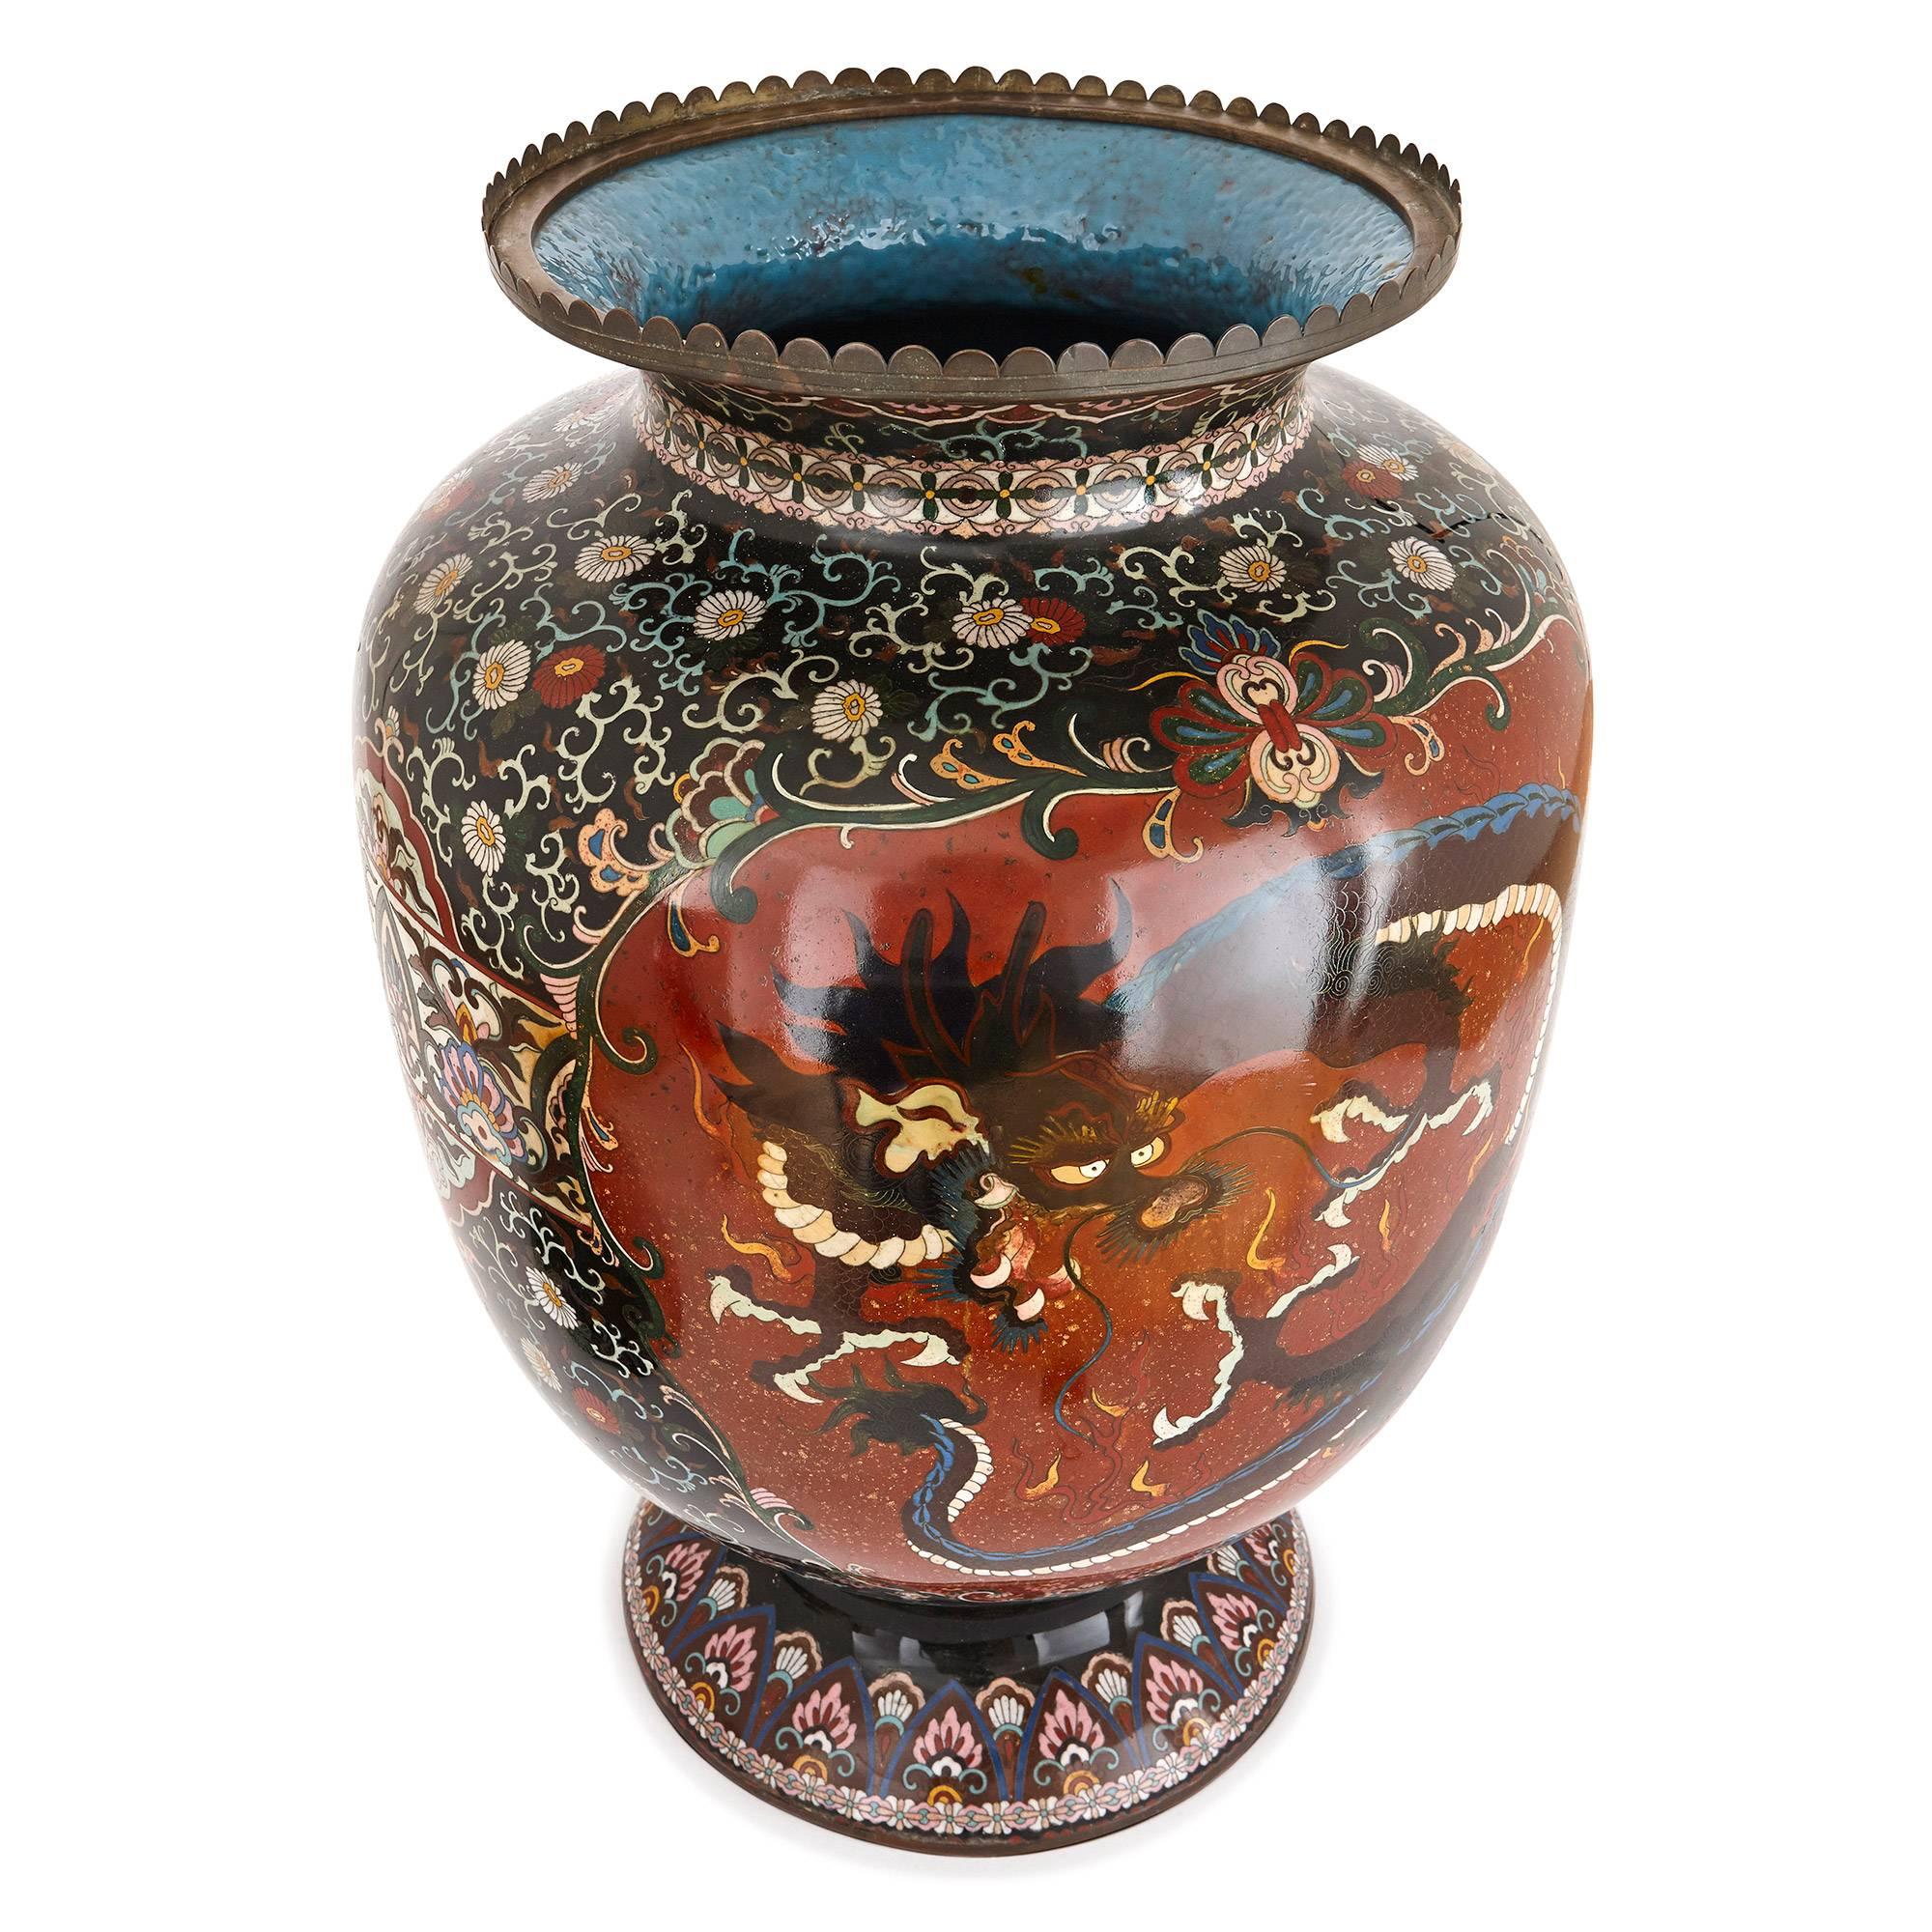 Ce vase japonais ancien au décor complexe a été fabriqué pendant la période Meiji (1868-1912). Le vase est de forme circulaire et présente une base cintrée, un grand corps ovoïde et un couvercle avec un fleuron en forme de chignon. Le vase est